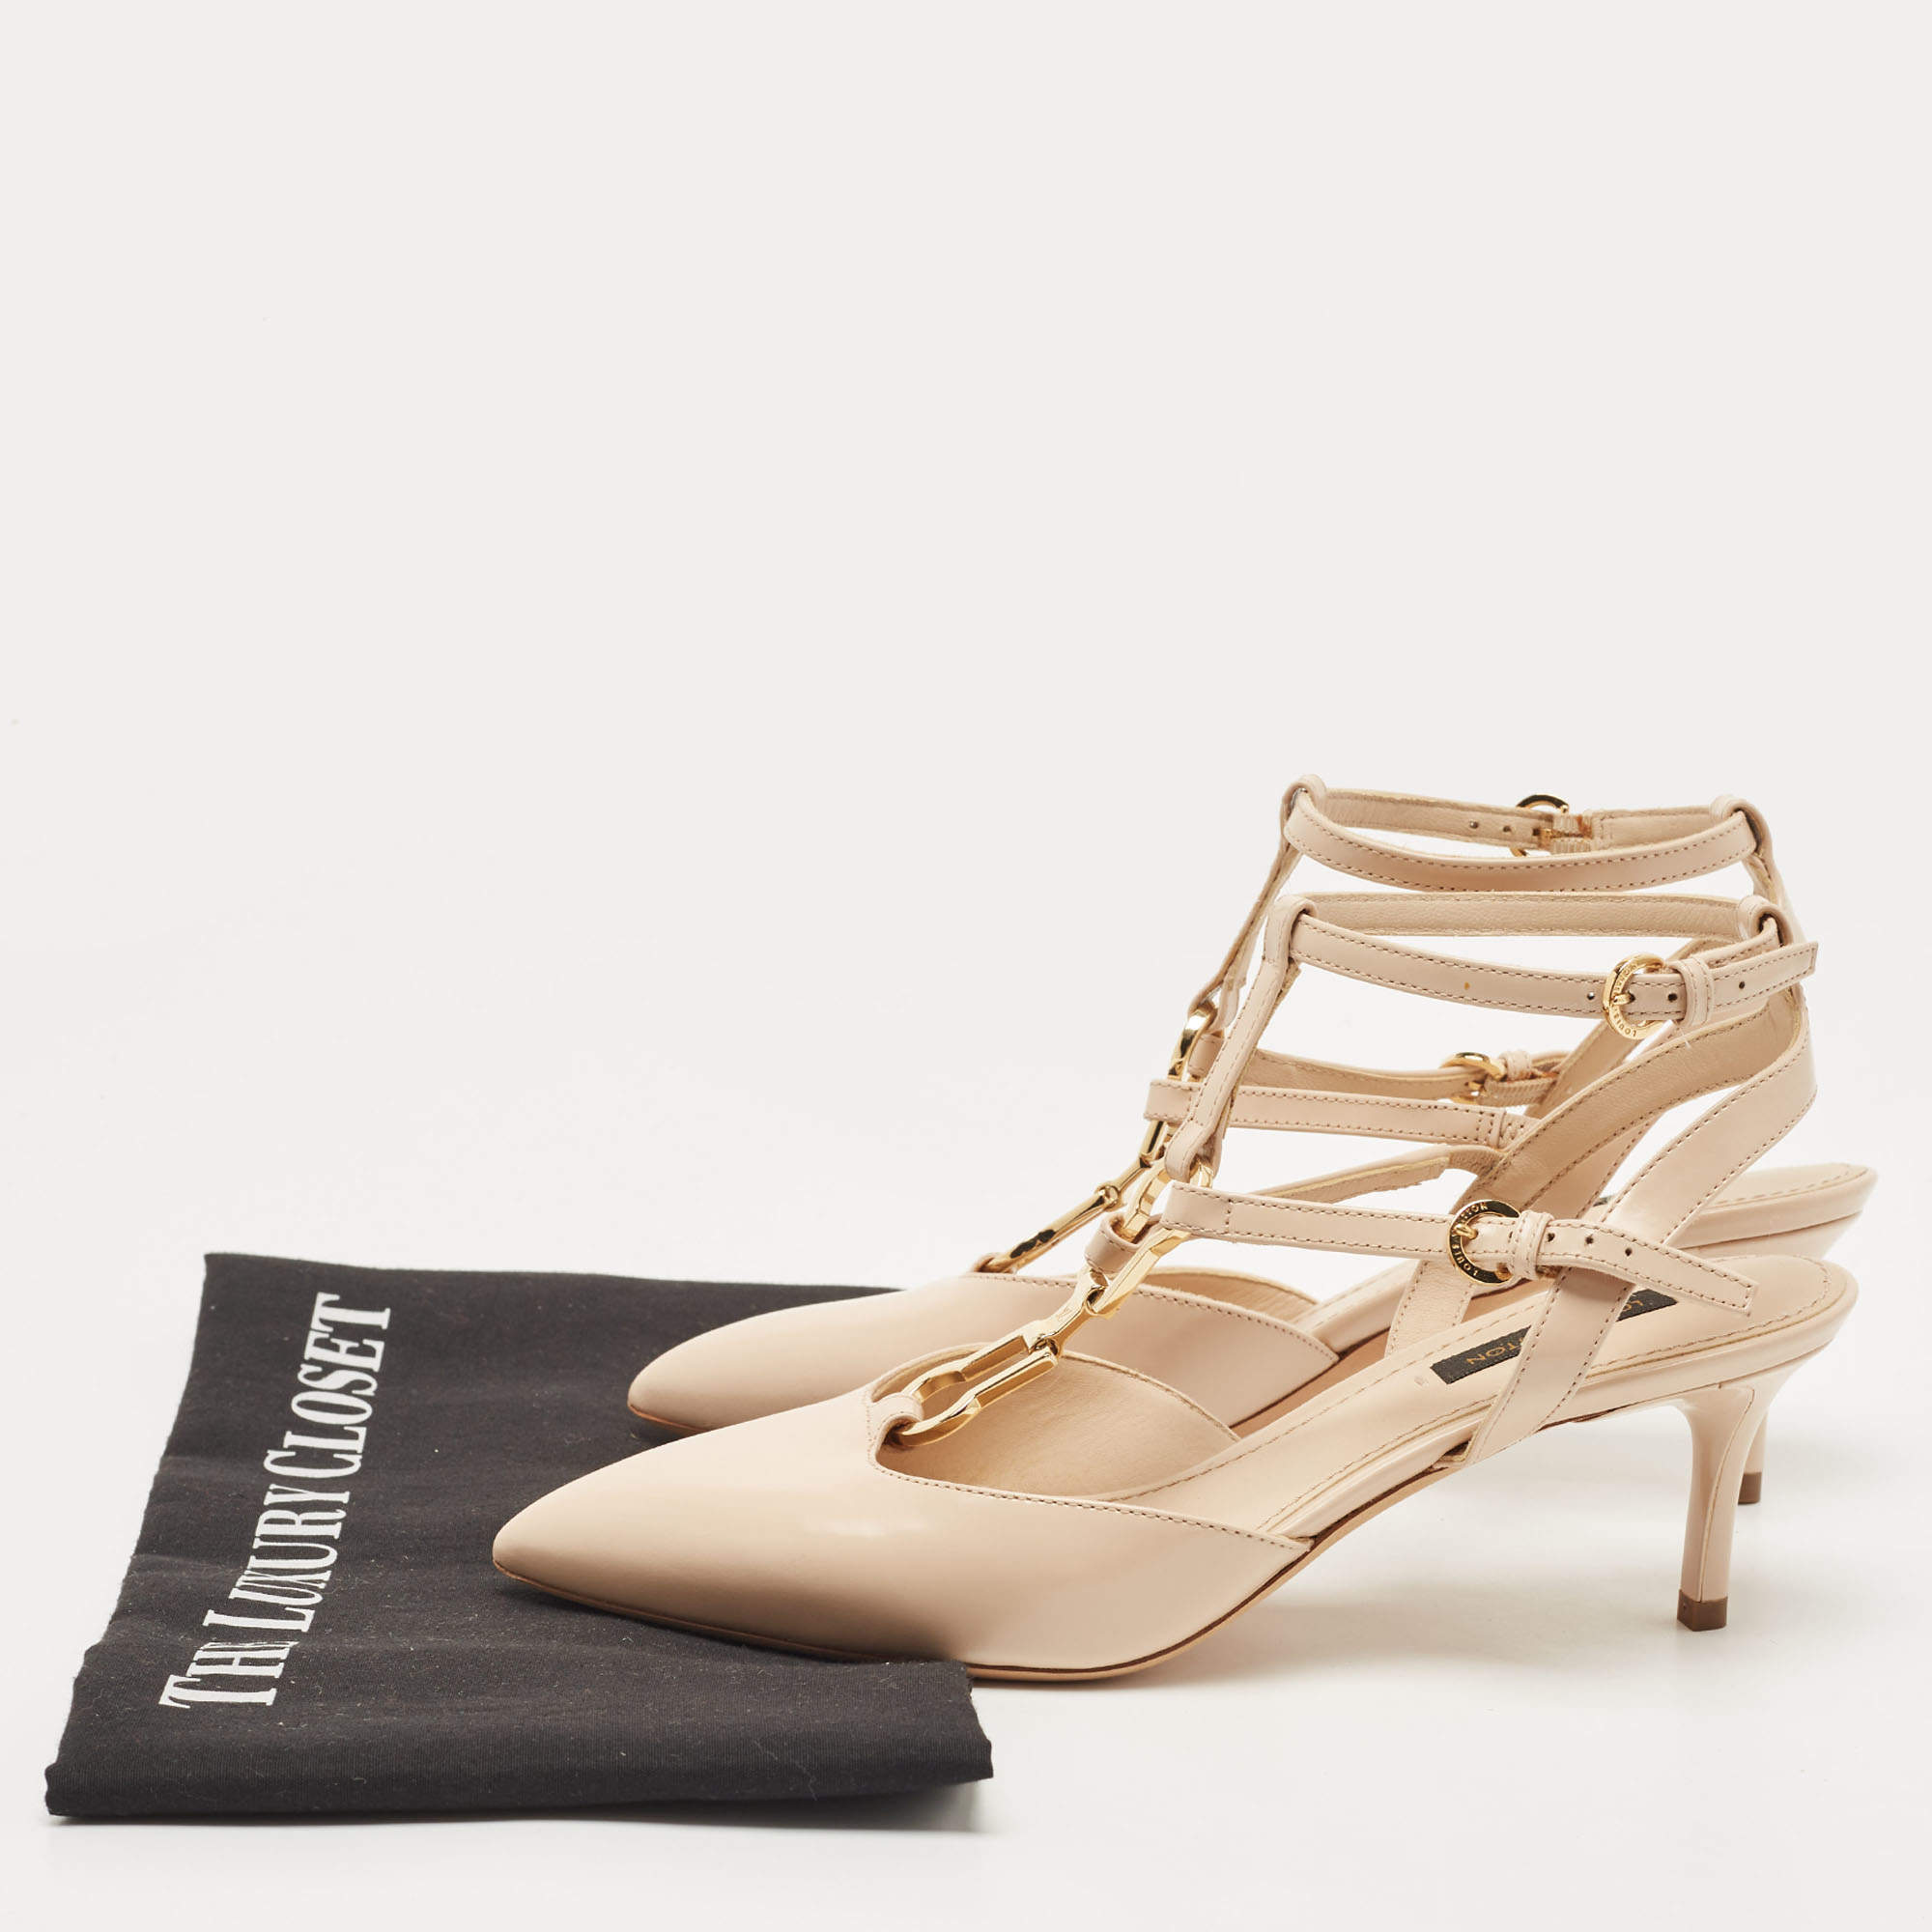 Louis Vuitton, Shoes, Louis Vuitton Ankle Strap Kitten Heels